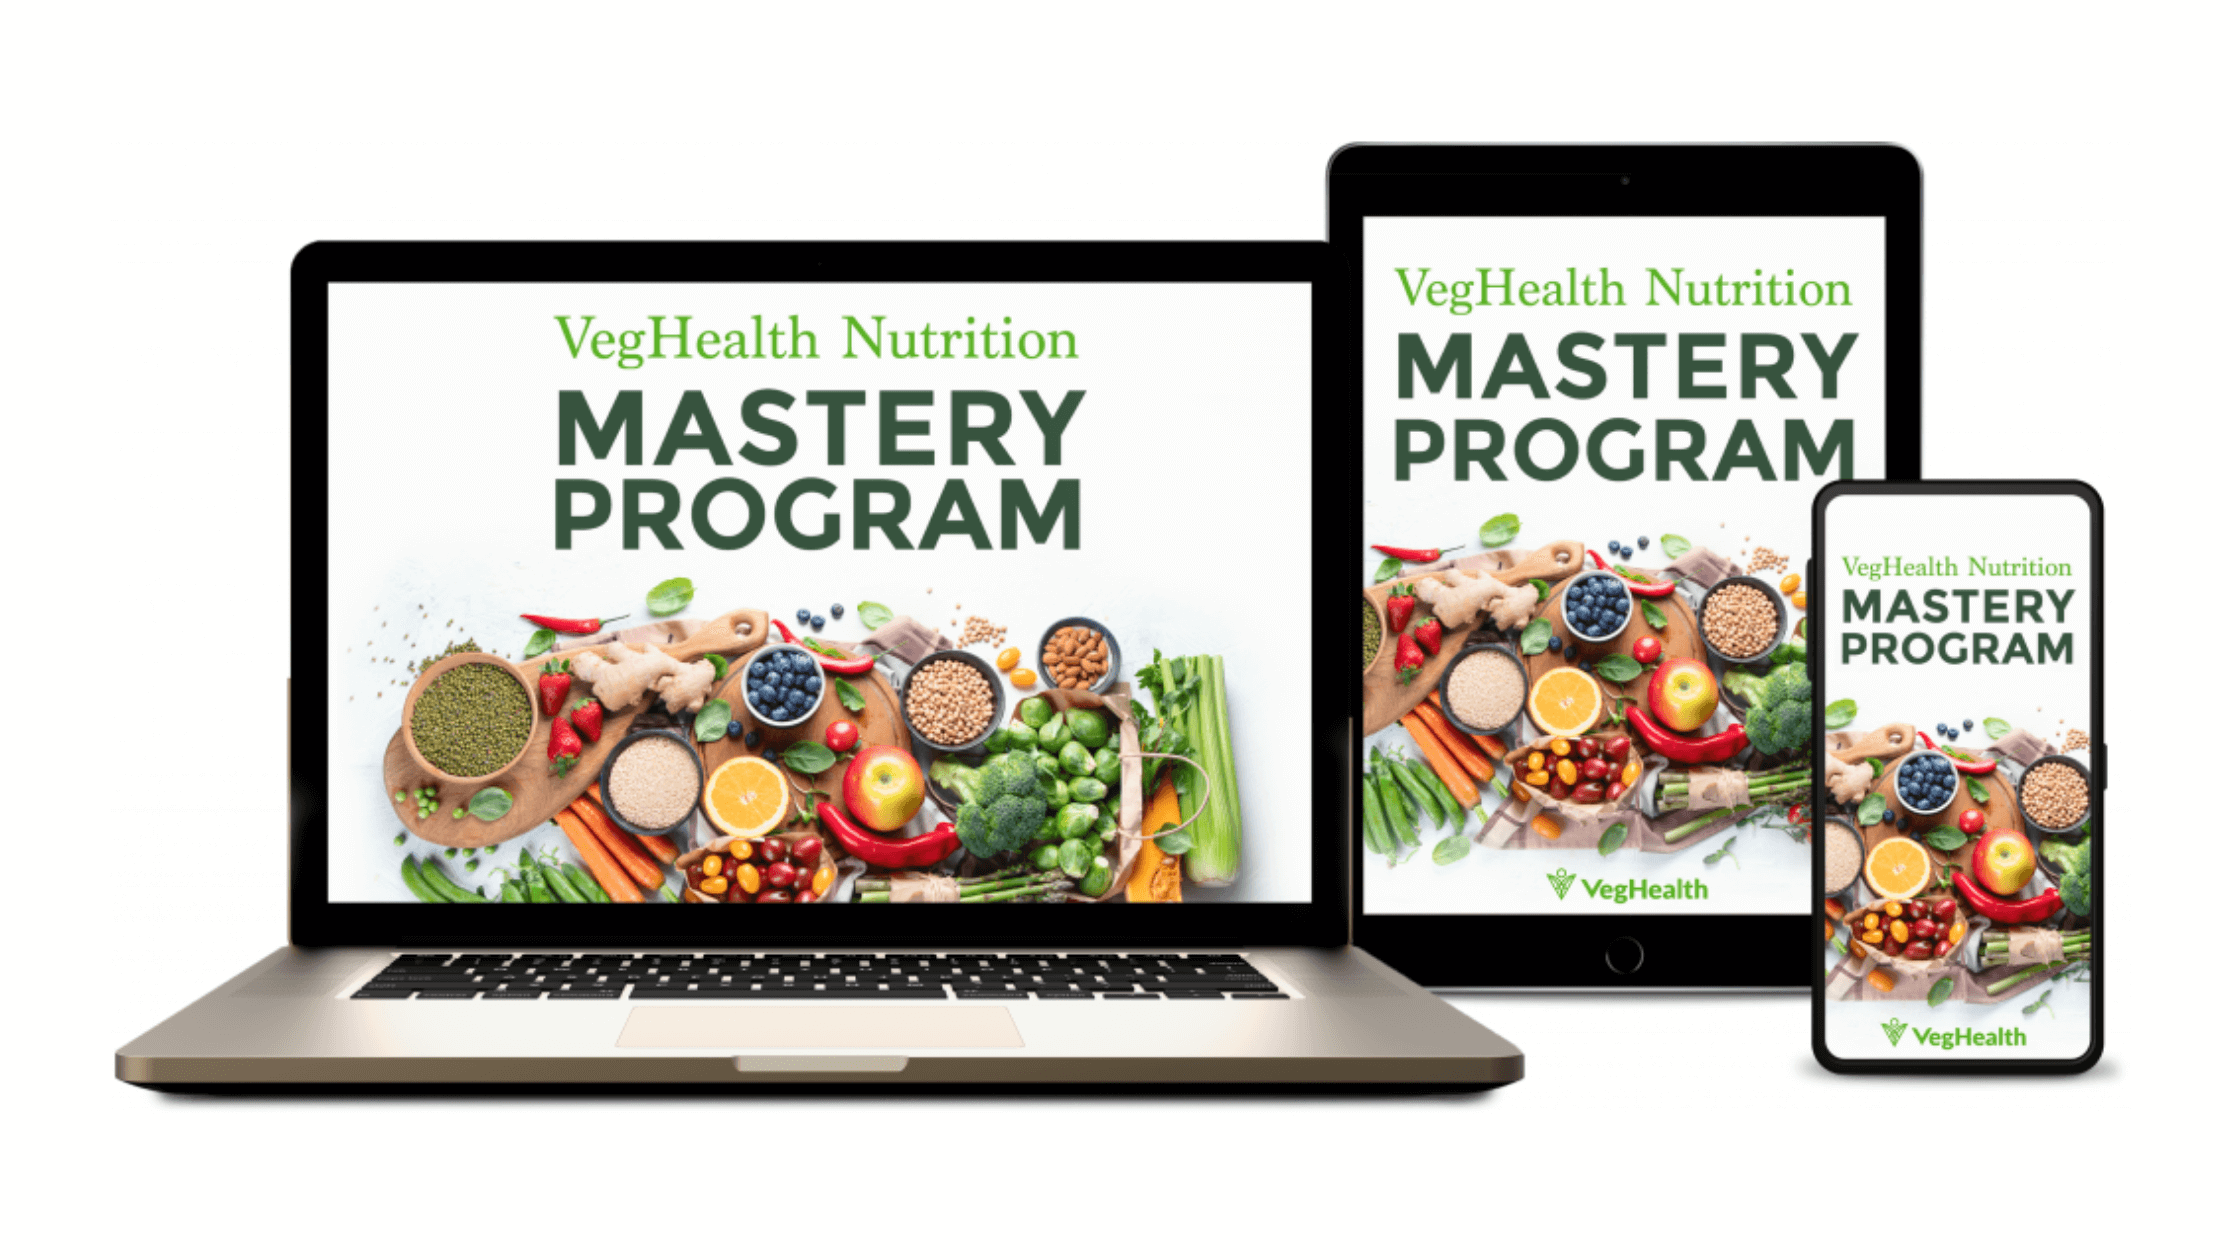 VegHealth-Nutrition-Mastery-Program-Reviews